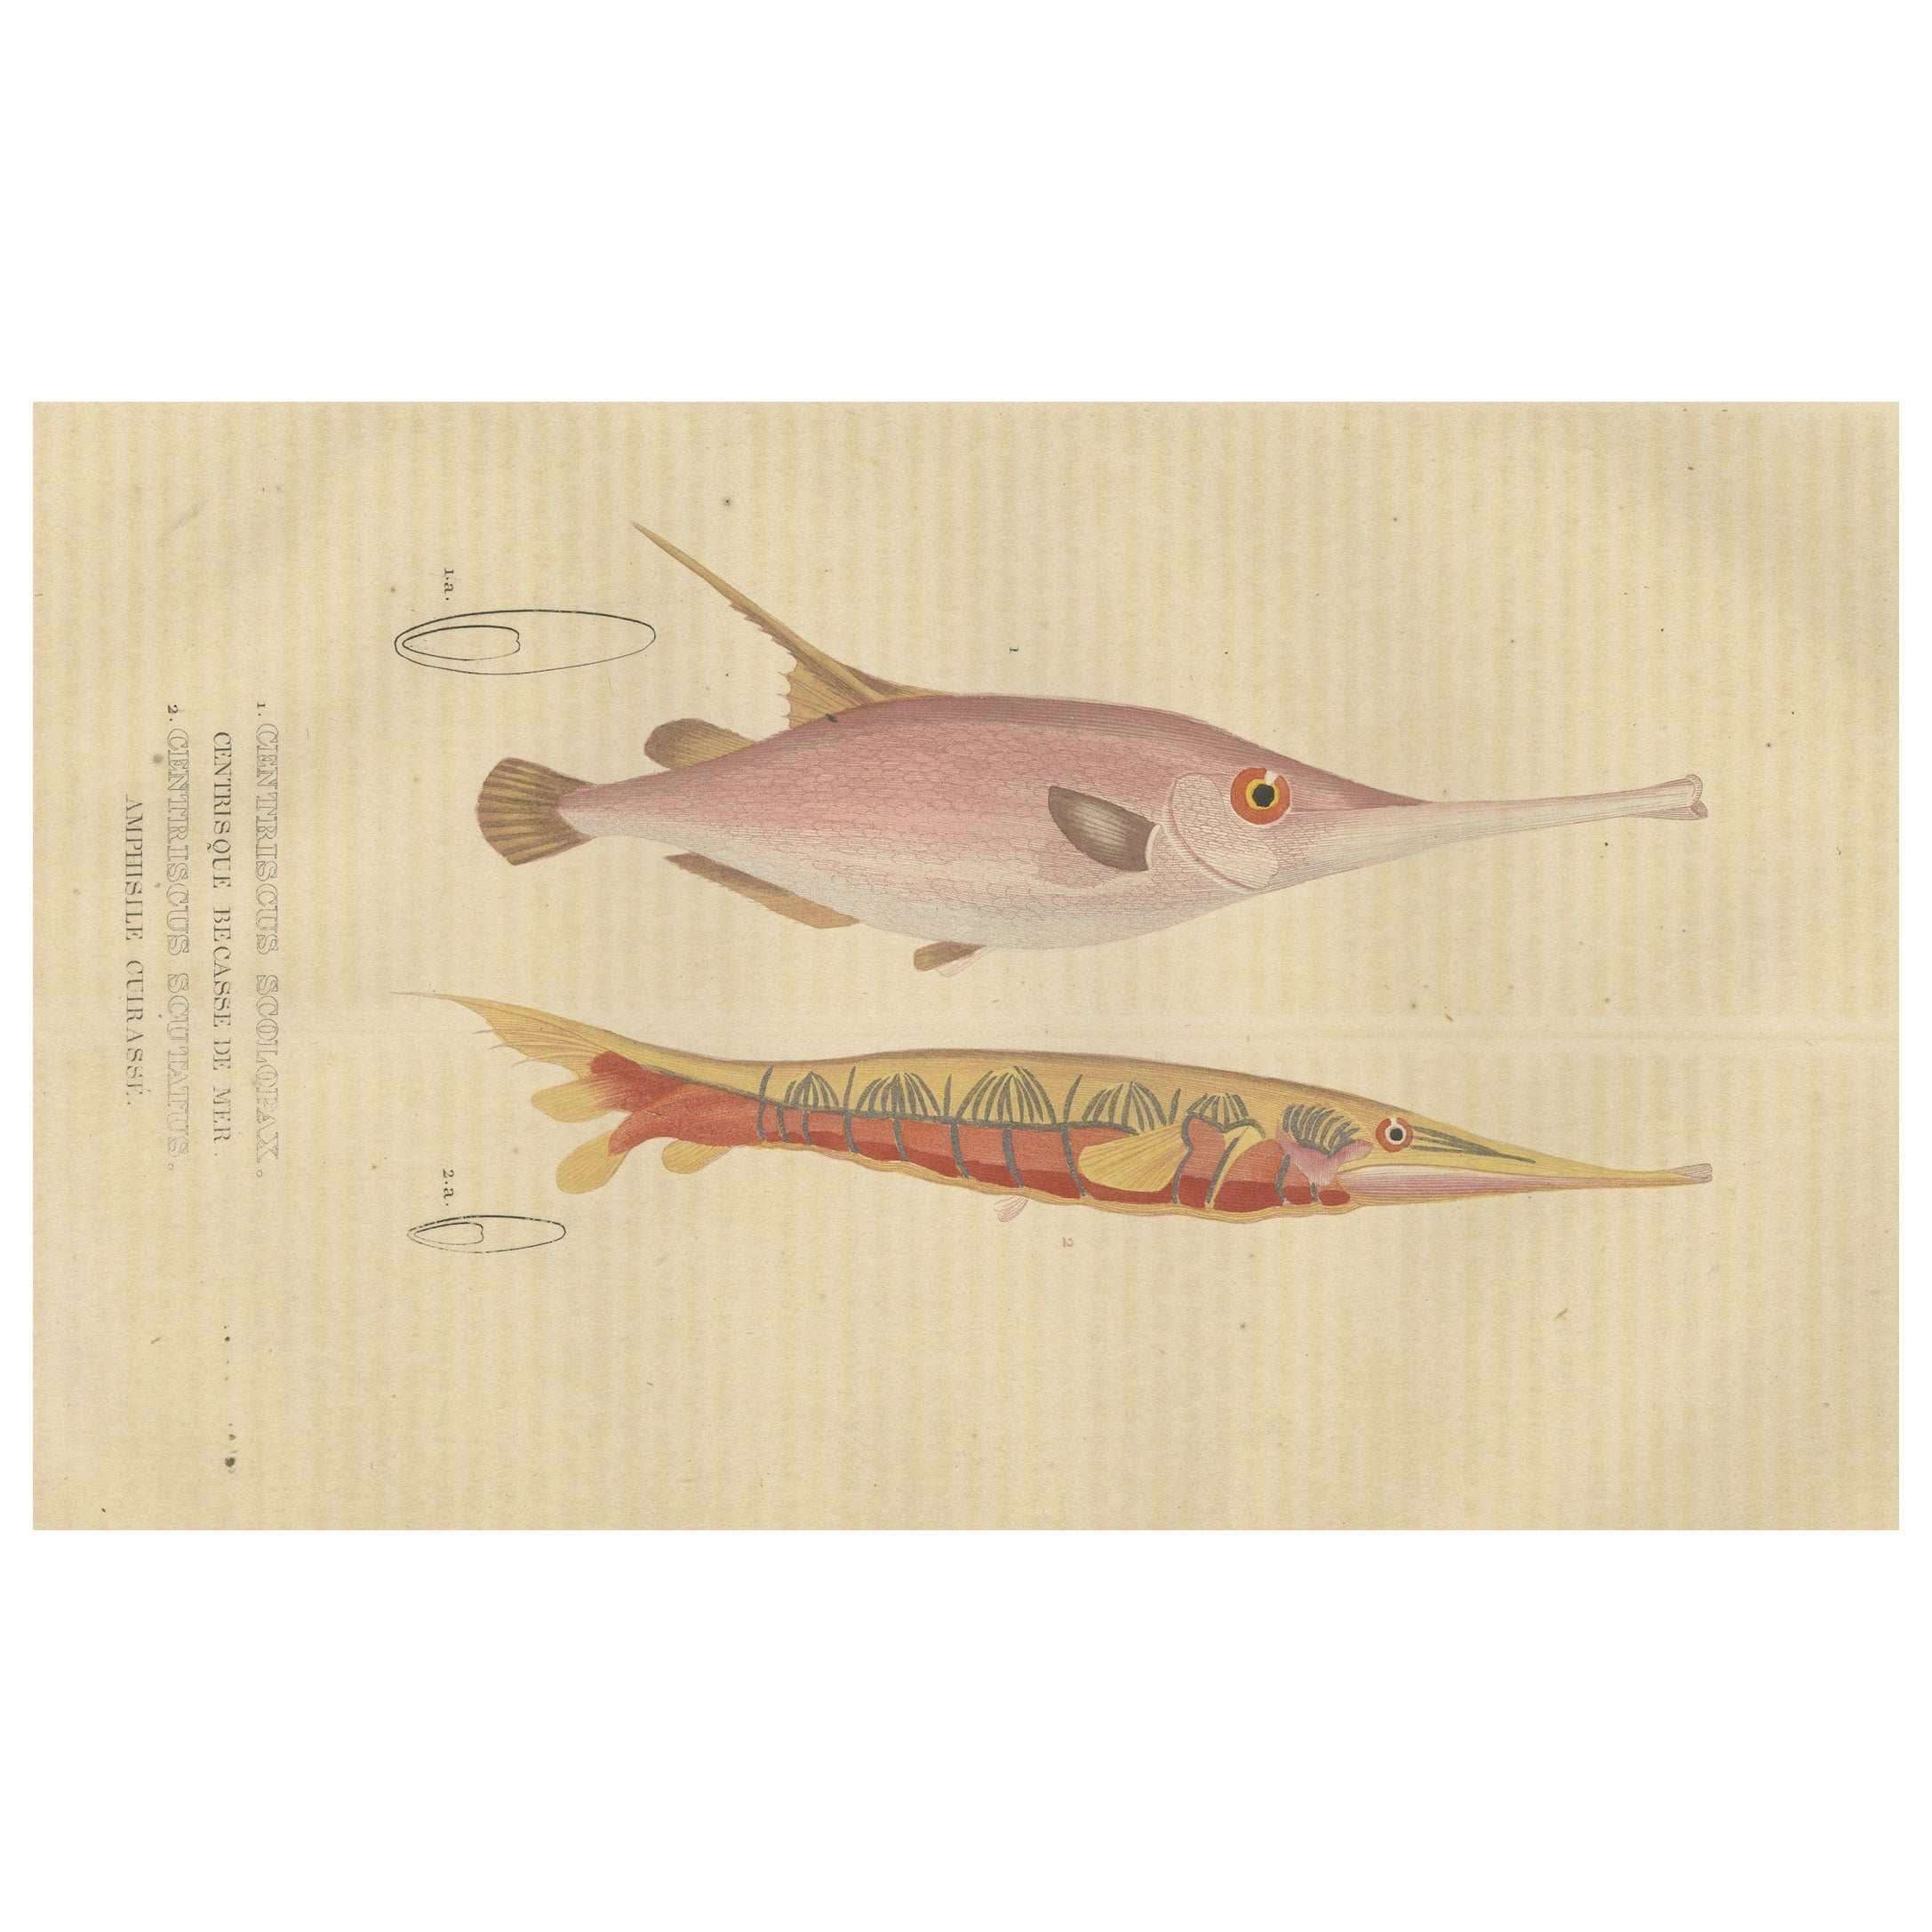 Elegance sous-marine : Poisson-rasoir et crevette - Une étude de gravure marine, 1845